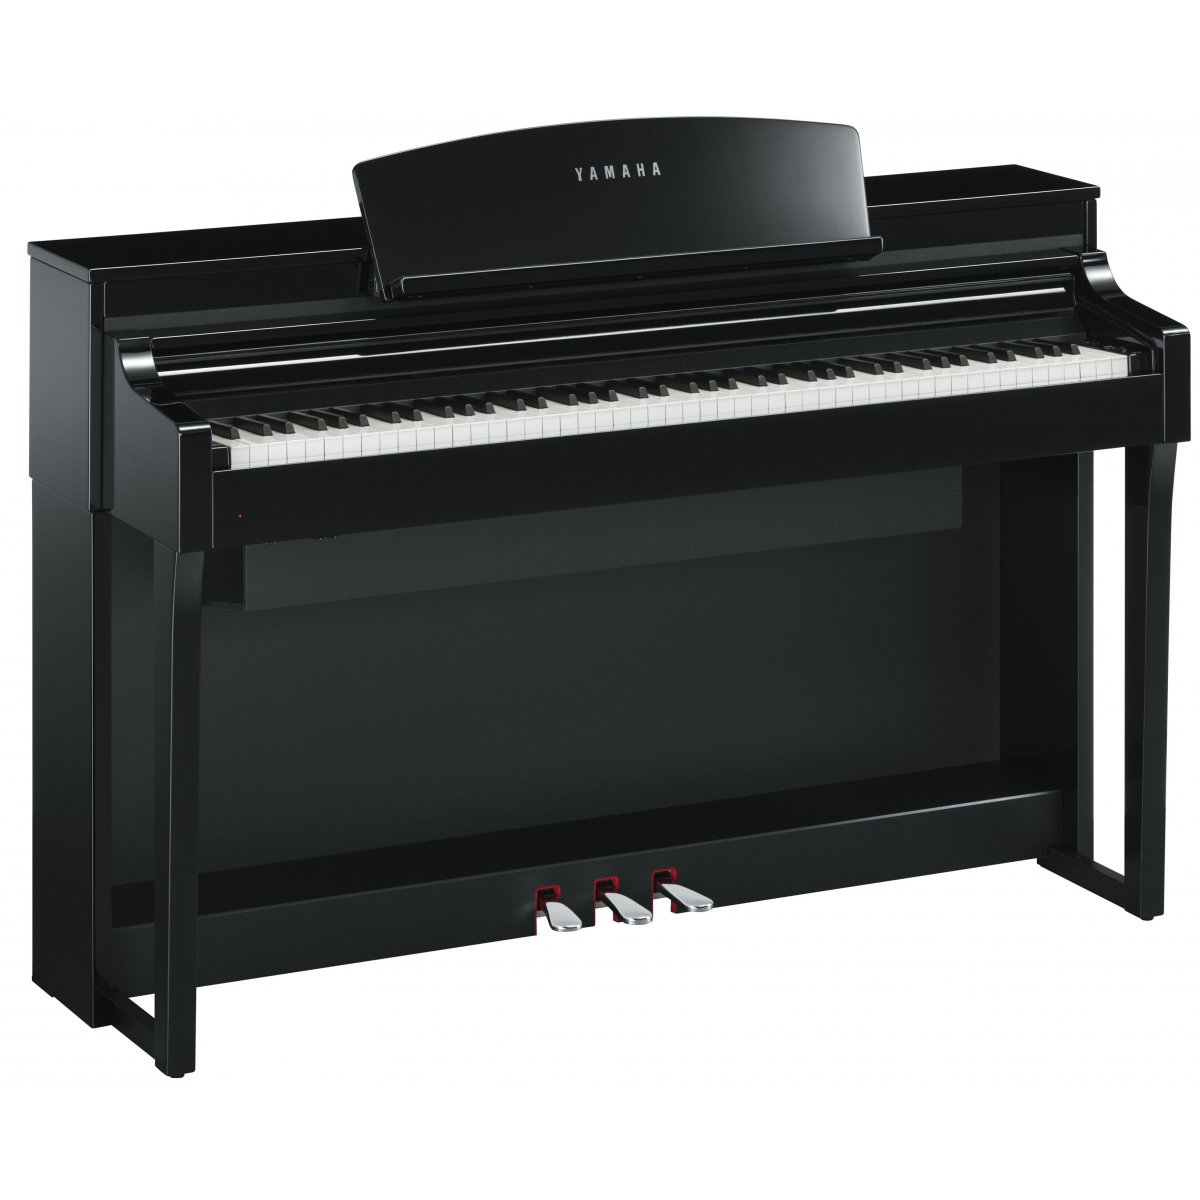 Pianos numériques meubles - Yamaha - CSP-170 (NOIR LAQUÉ)